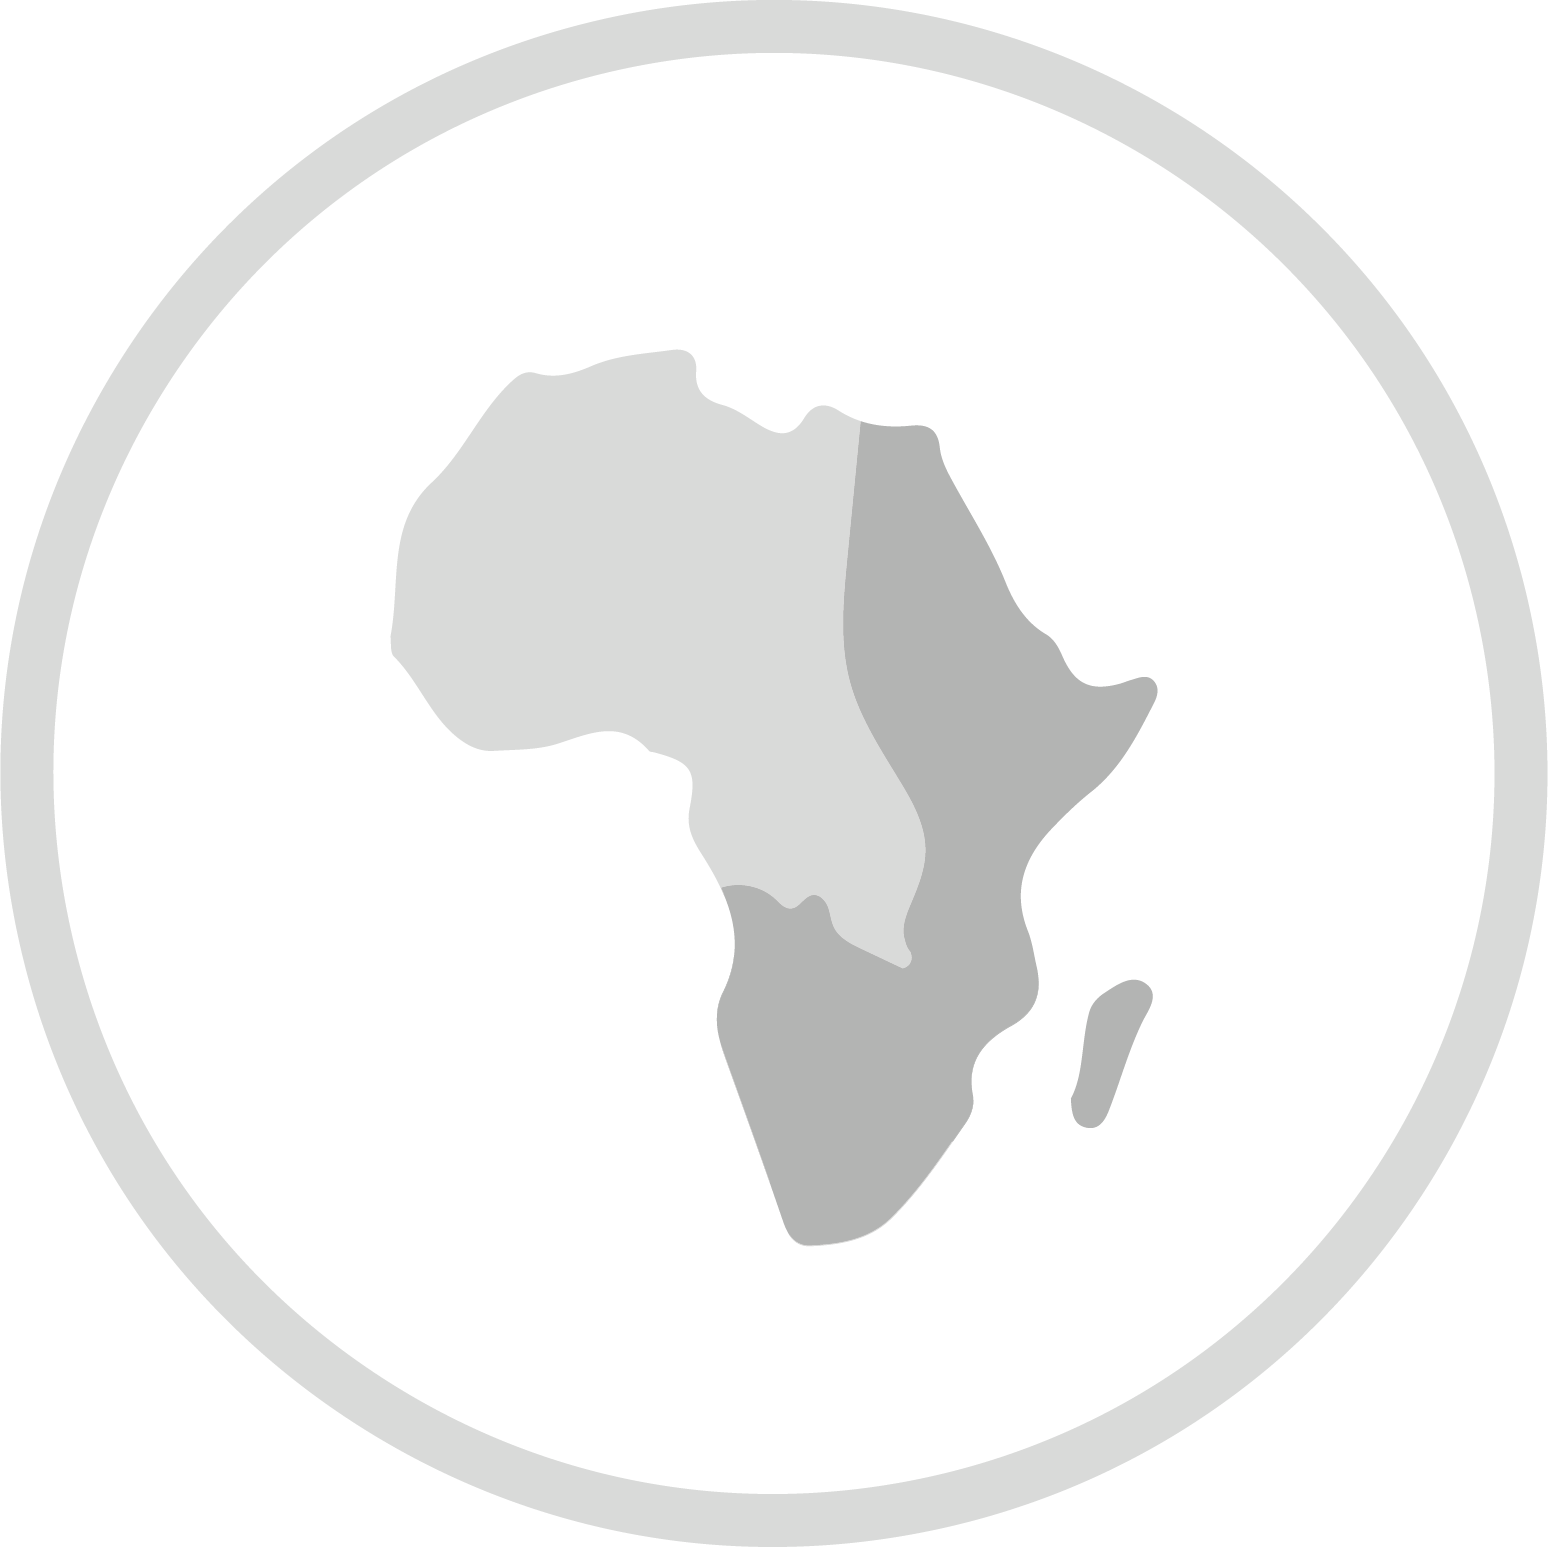 Afrique orientale et australe